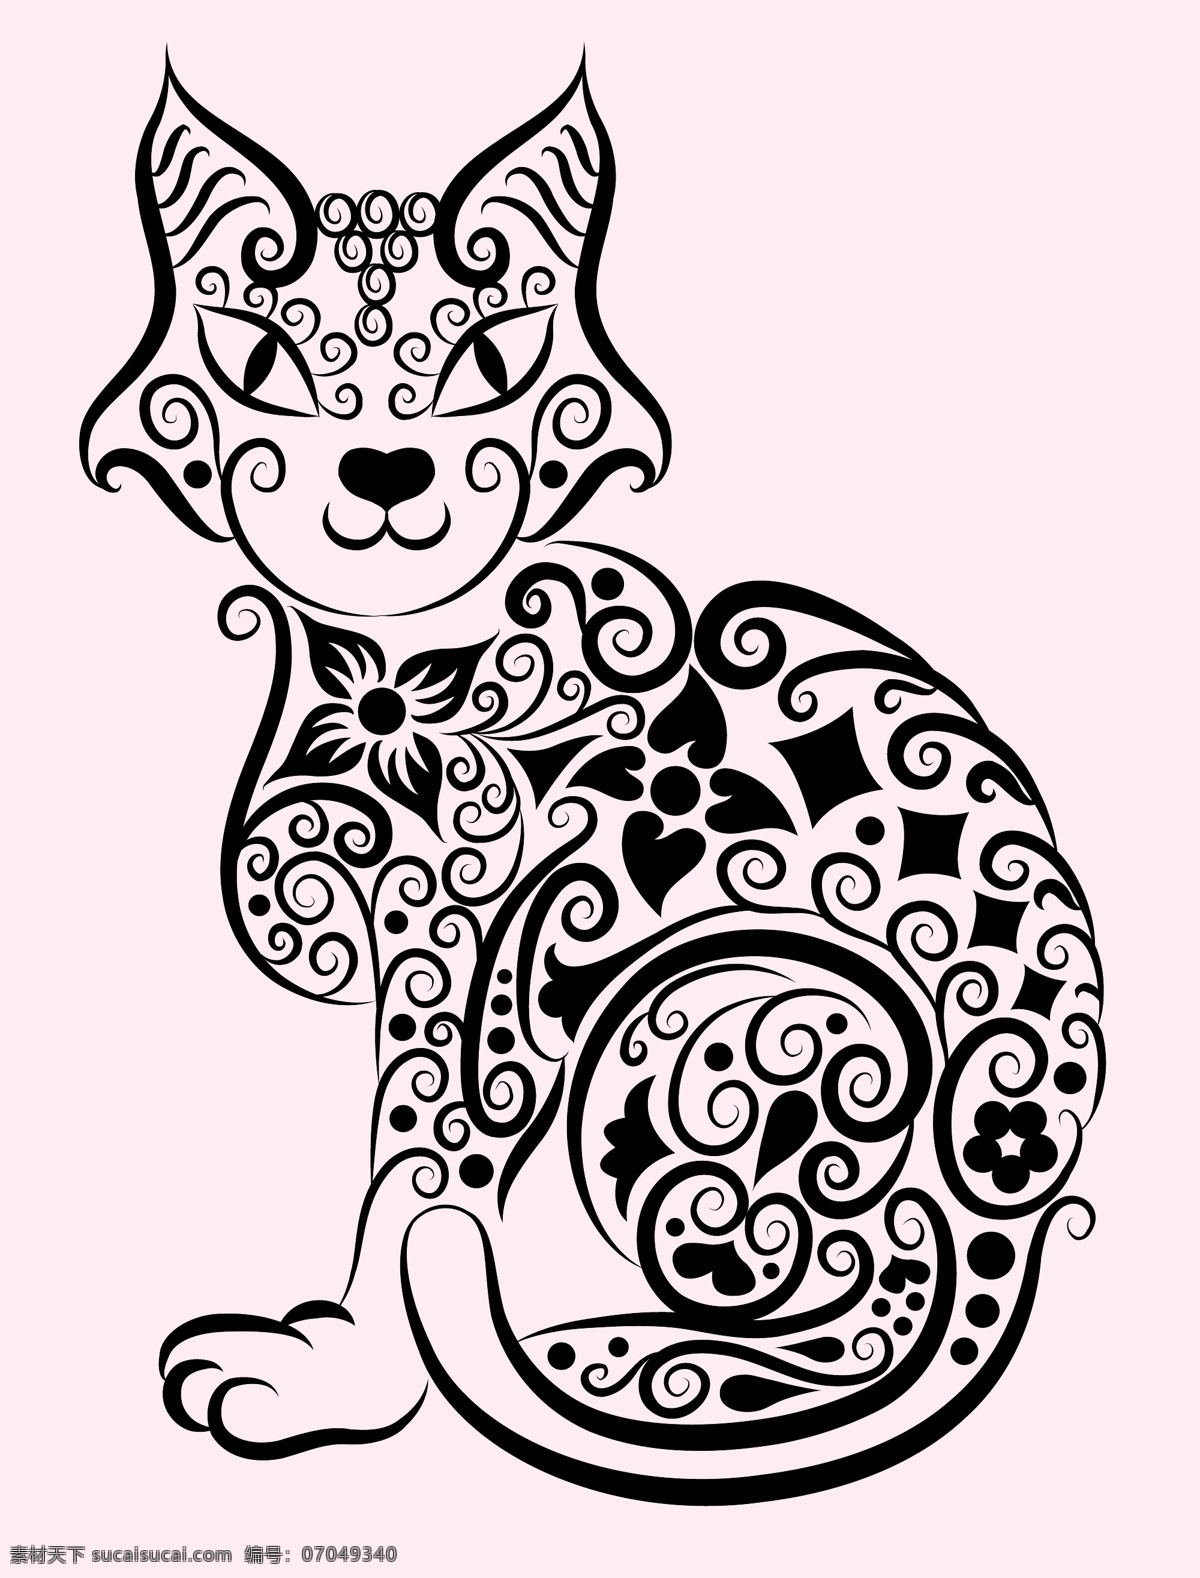 小猫 图案 手绘 稿 刺青 动物 花纹 剪影 猫 矢量素材 图形 纹身 线稿 线条 矢量图 其他矢量图